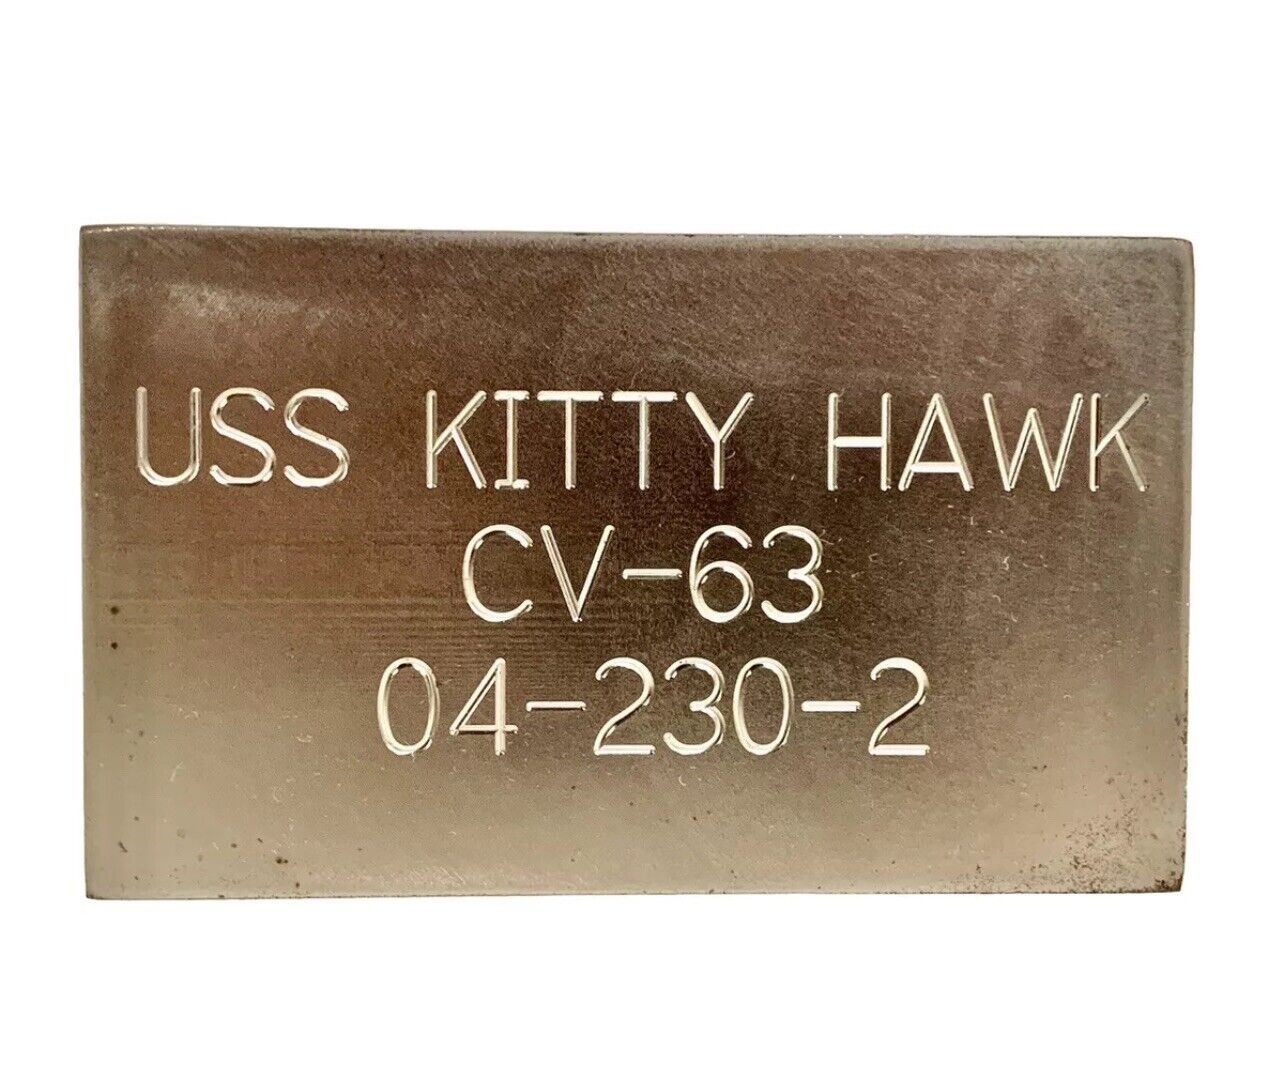 USS Kitty Hawk CV-63 Flight Deck. Rare Certificate Date Sept. 11th